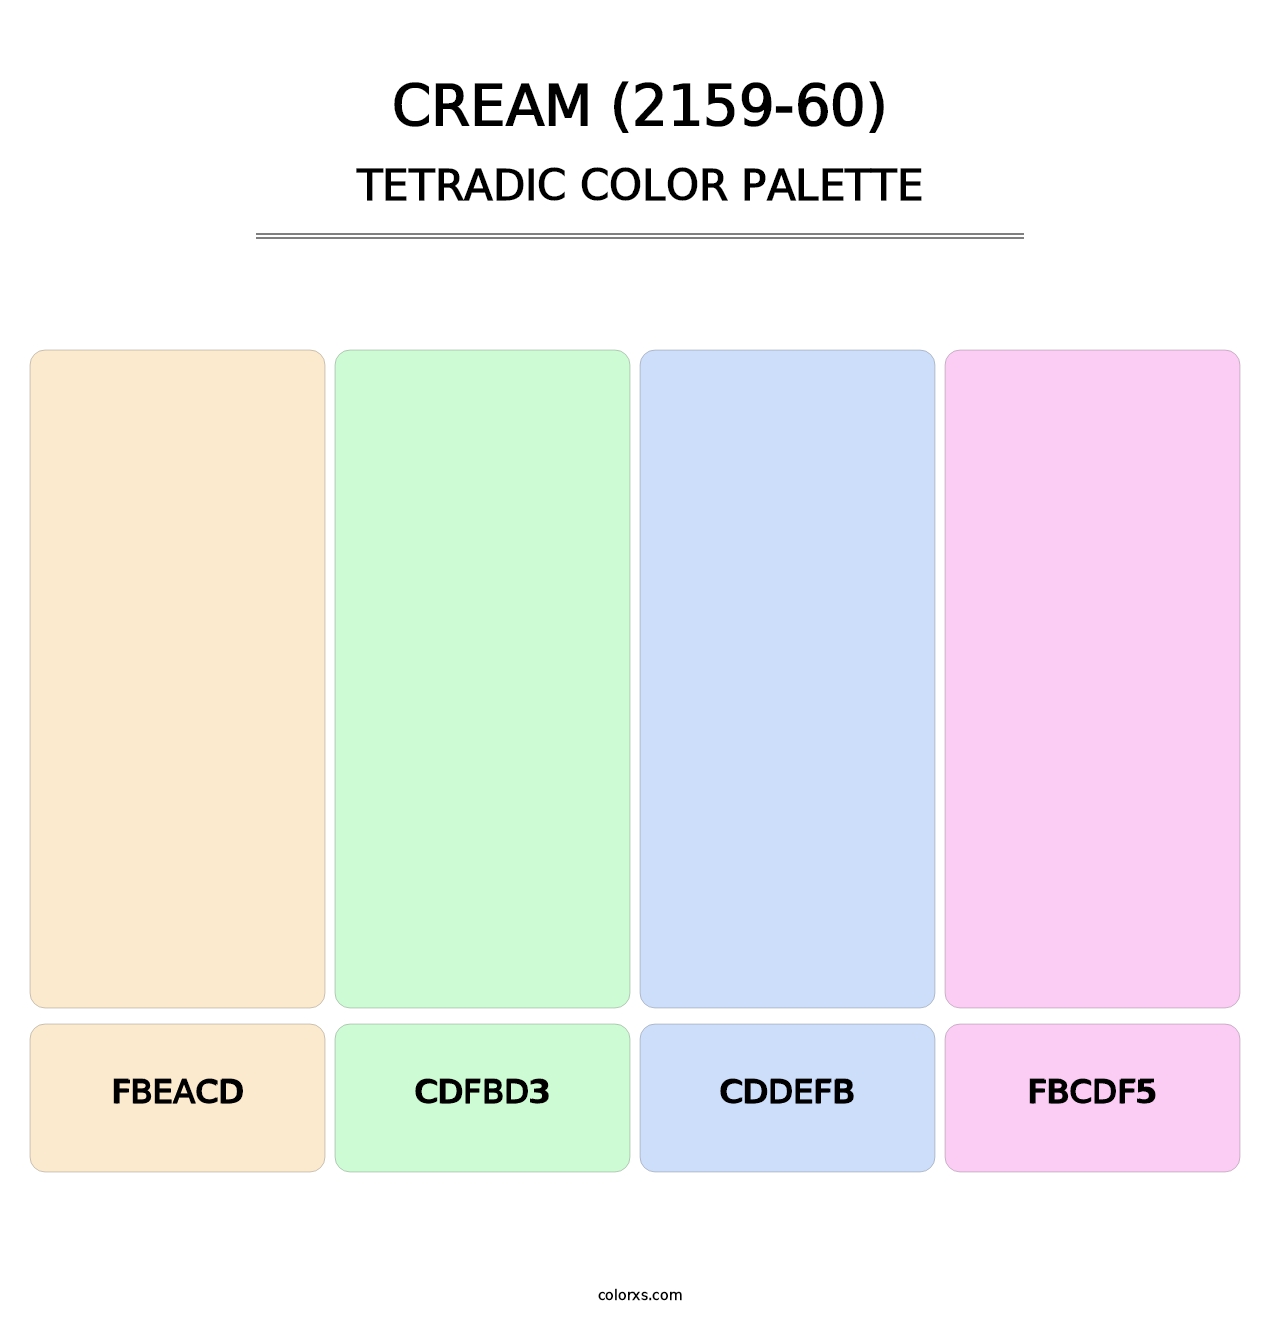 Cream (2159-60) - Tetradic Color Palette